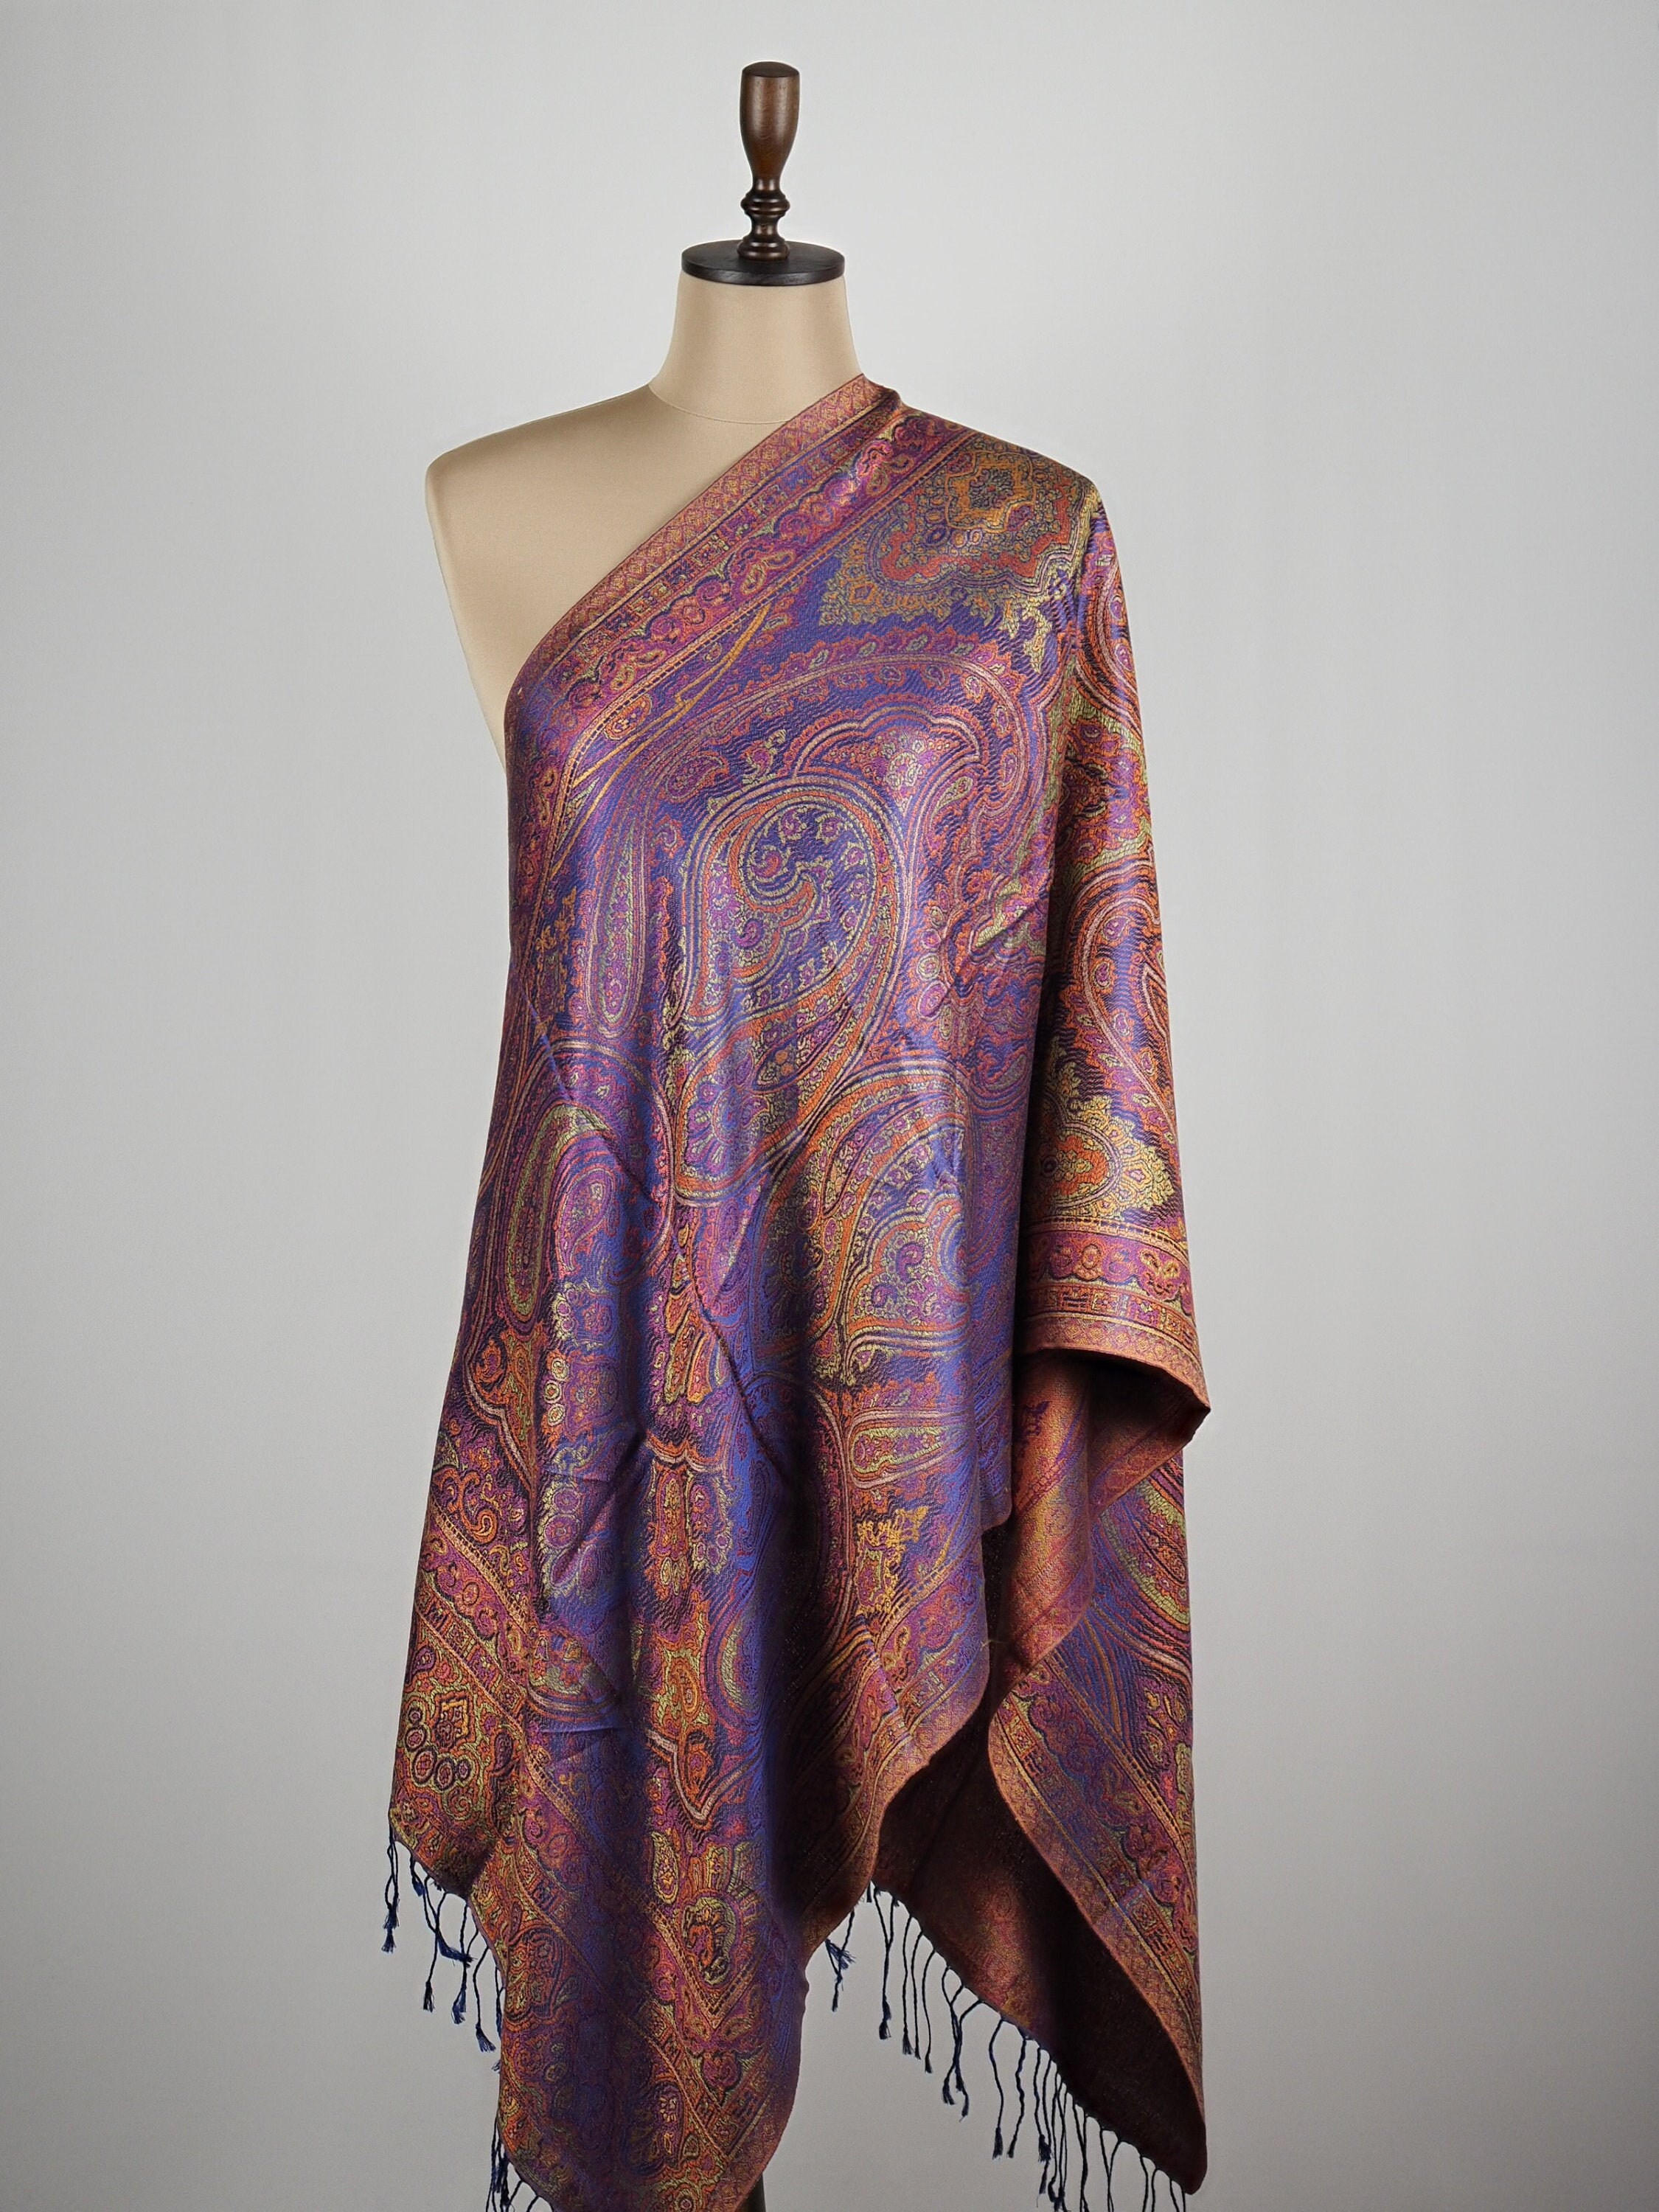 Ladies silk scarf 100% silk shawl long silk wrap soft | Etsy